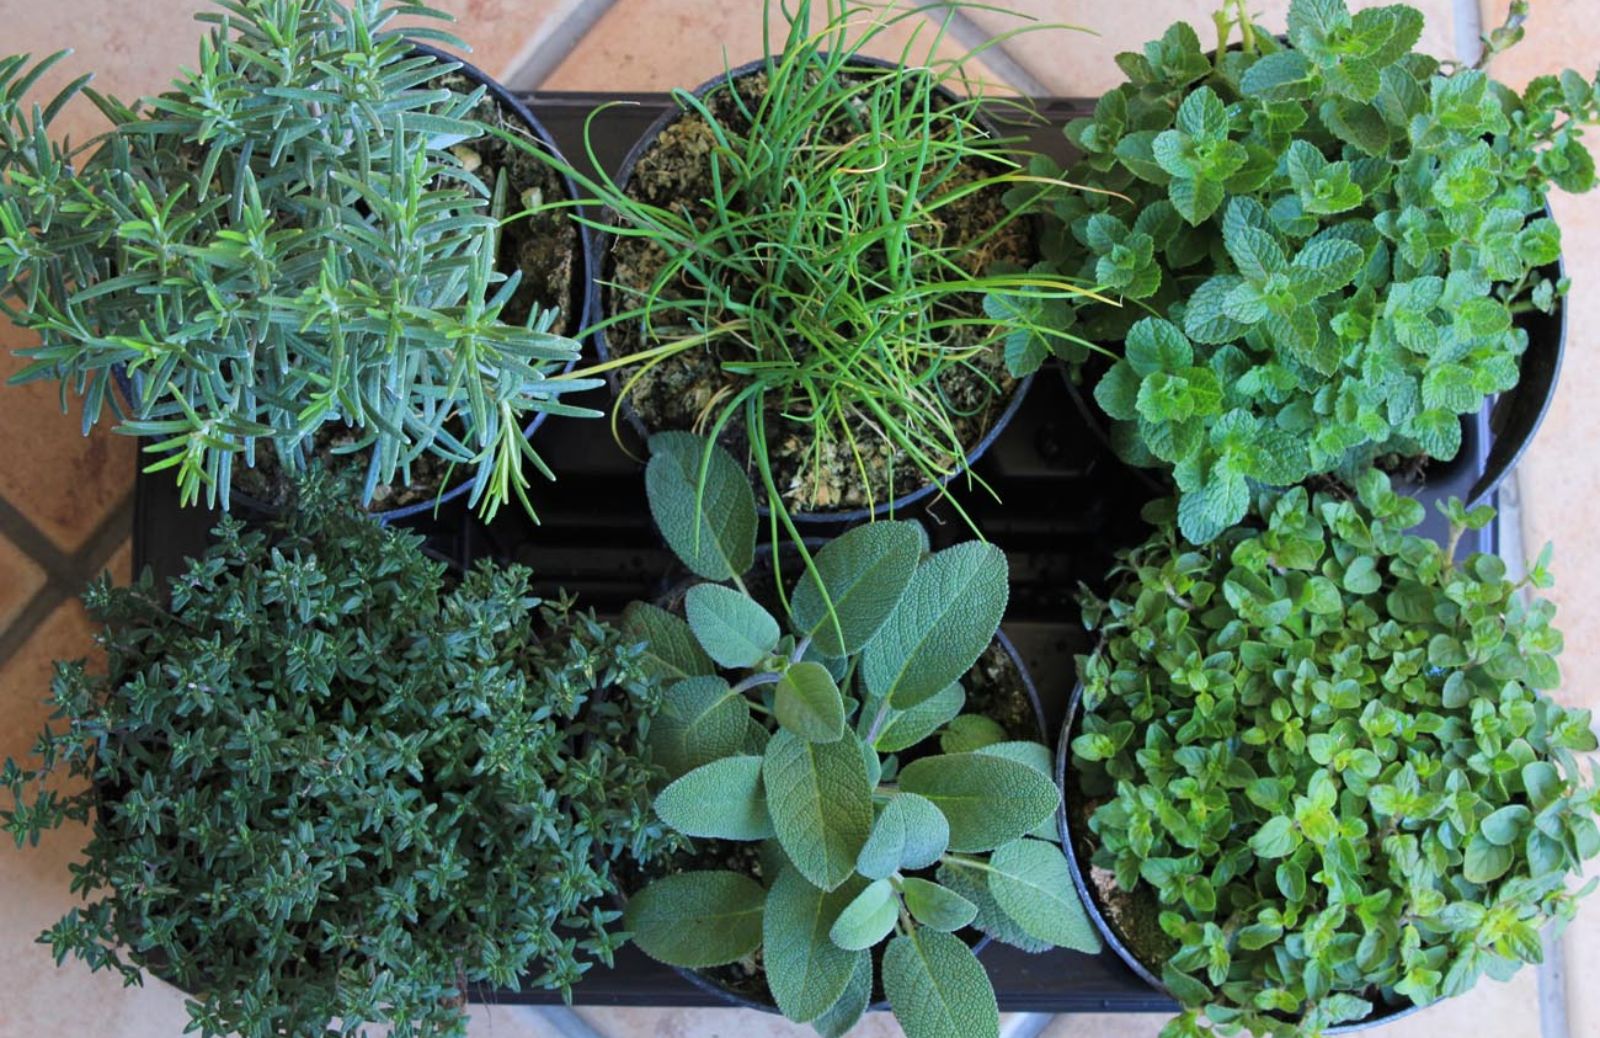 Le 10 piante aromatiche da coltivare con facilità a casa